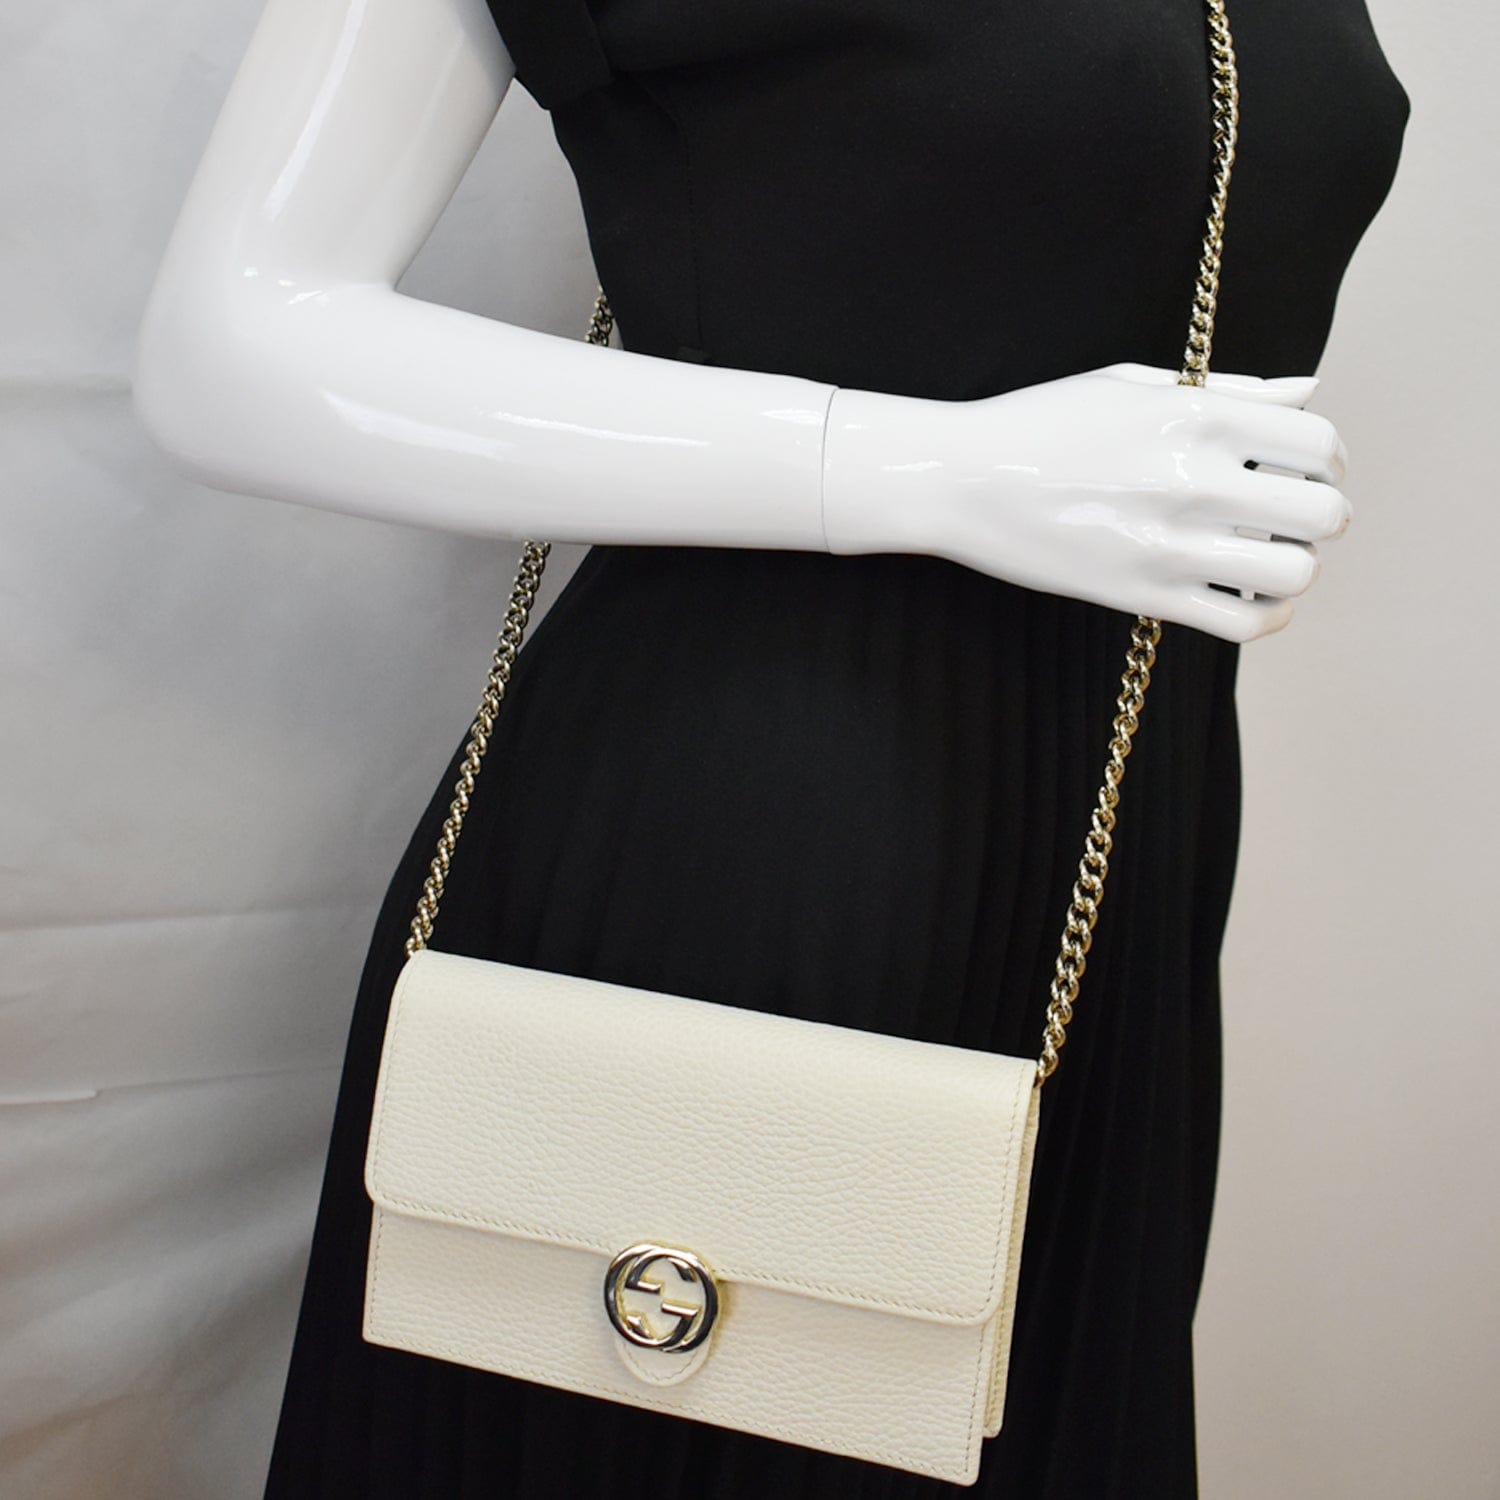 100% authentic Gucci handbag  Gucci handbags, Gucci, Handbag